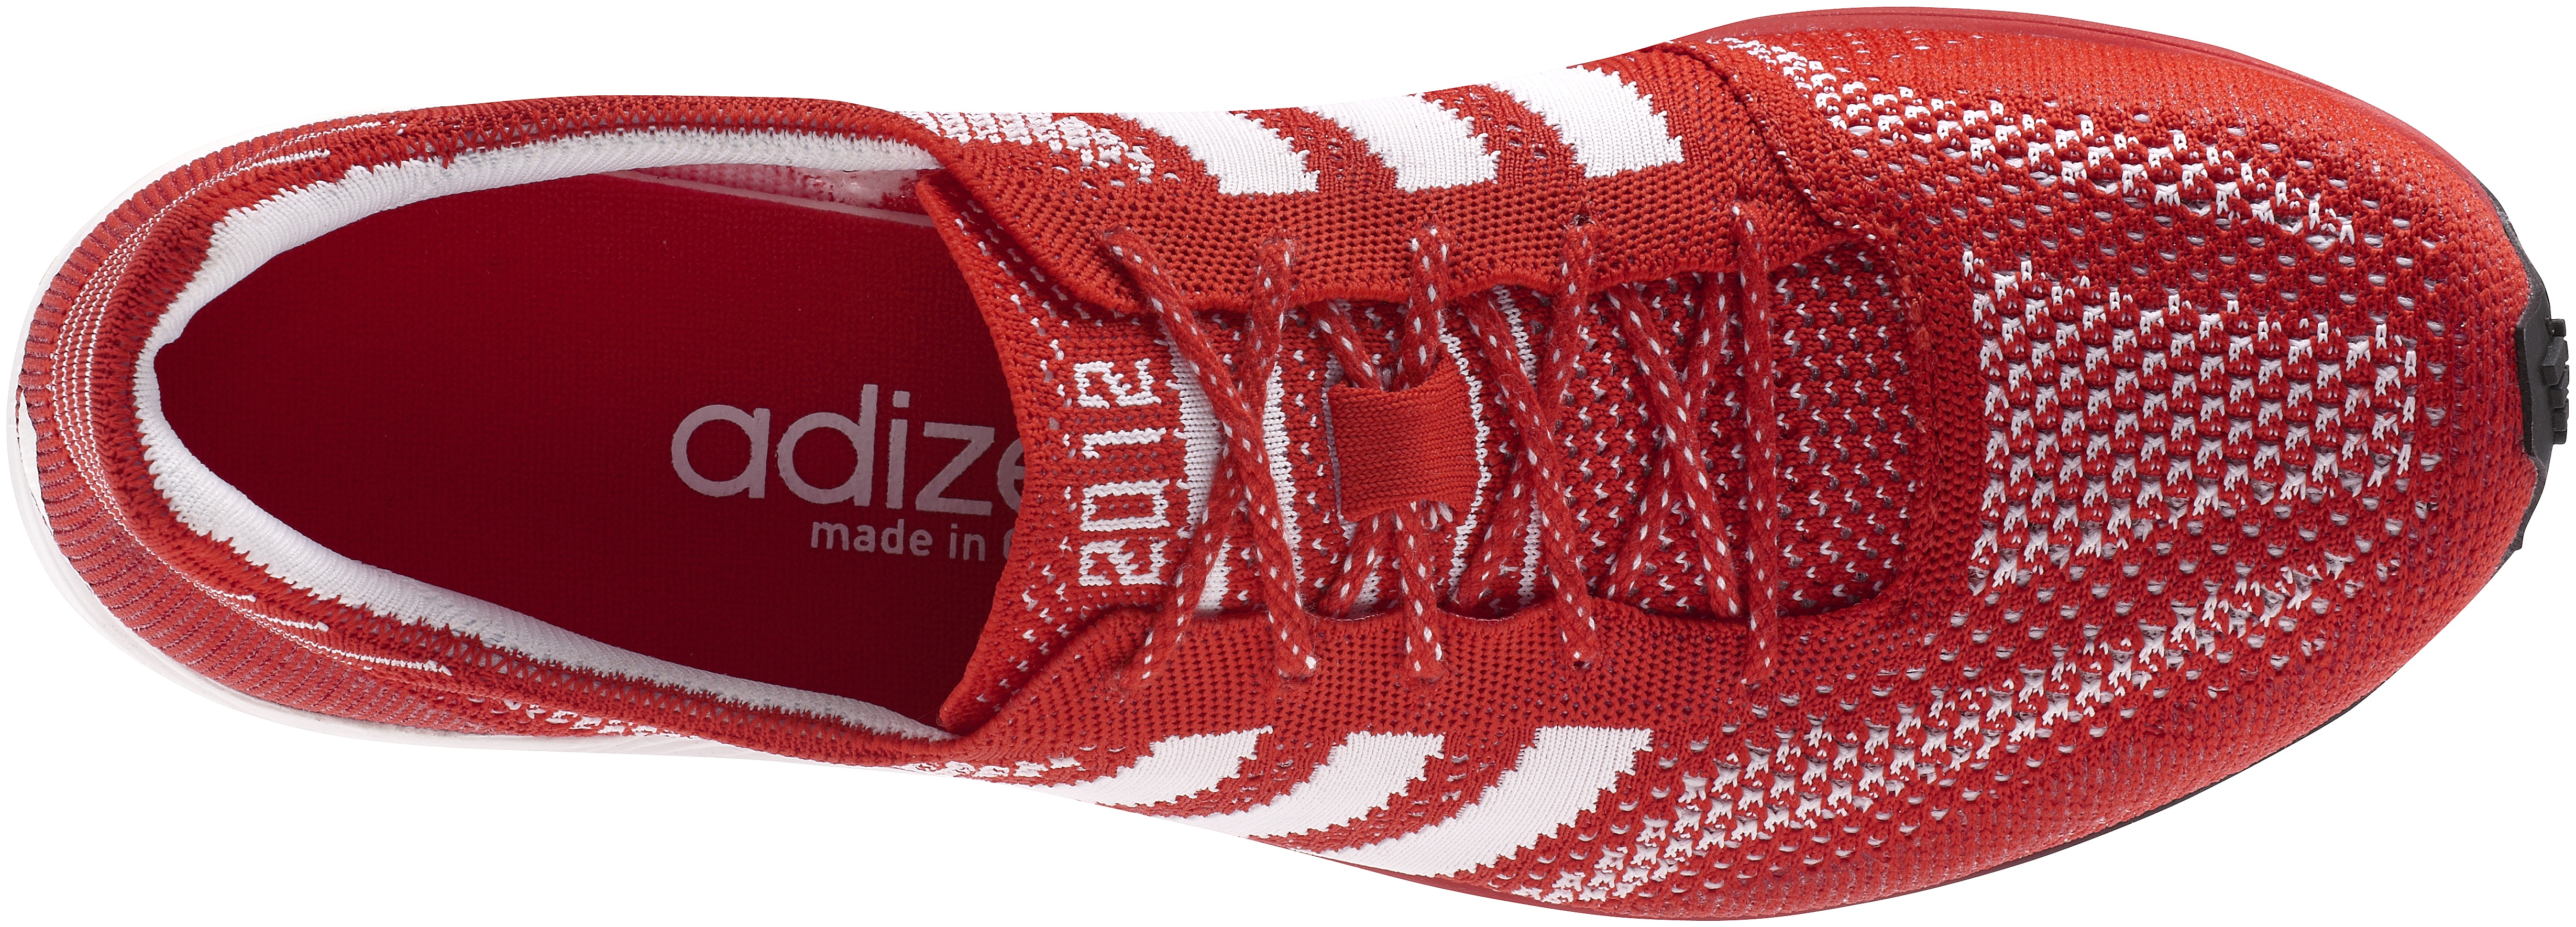 adidas adizero primeknit olympics running shoes